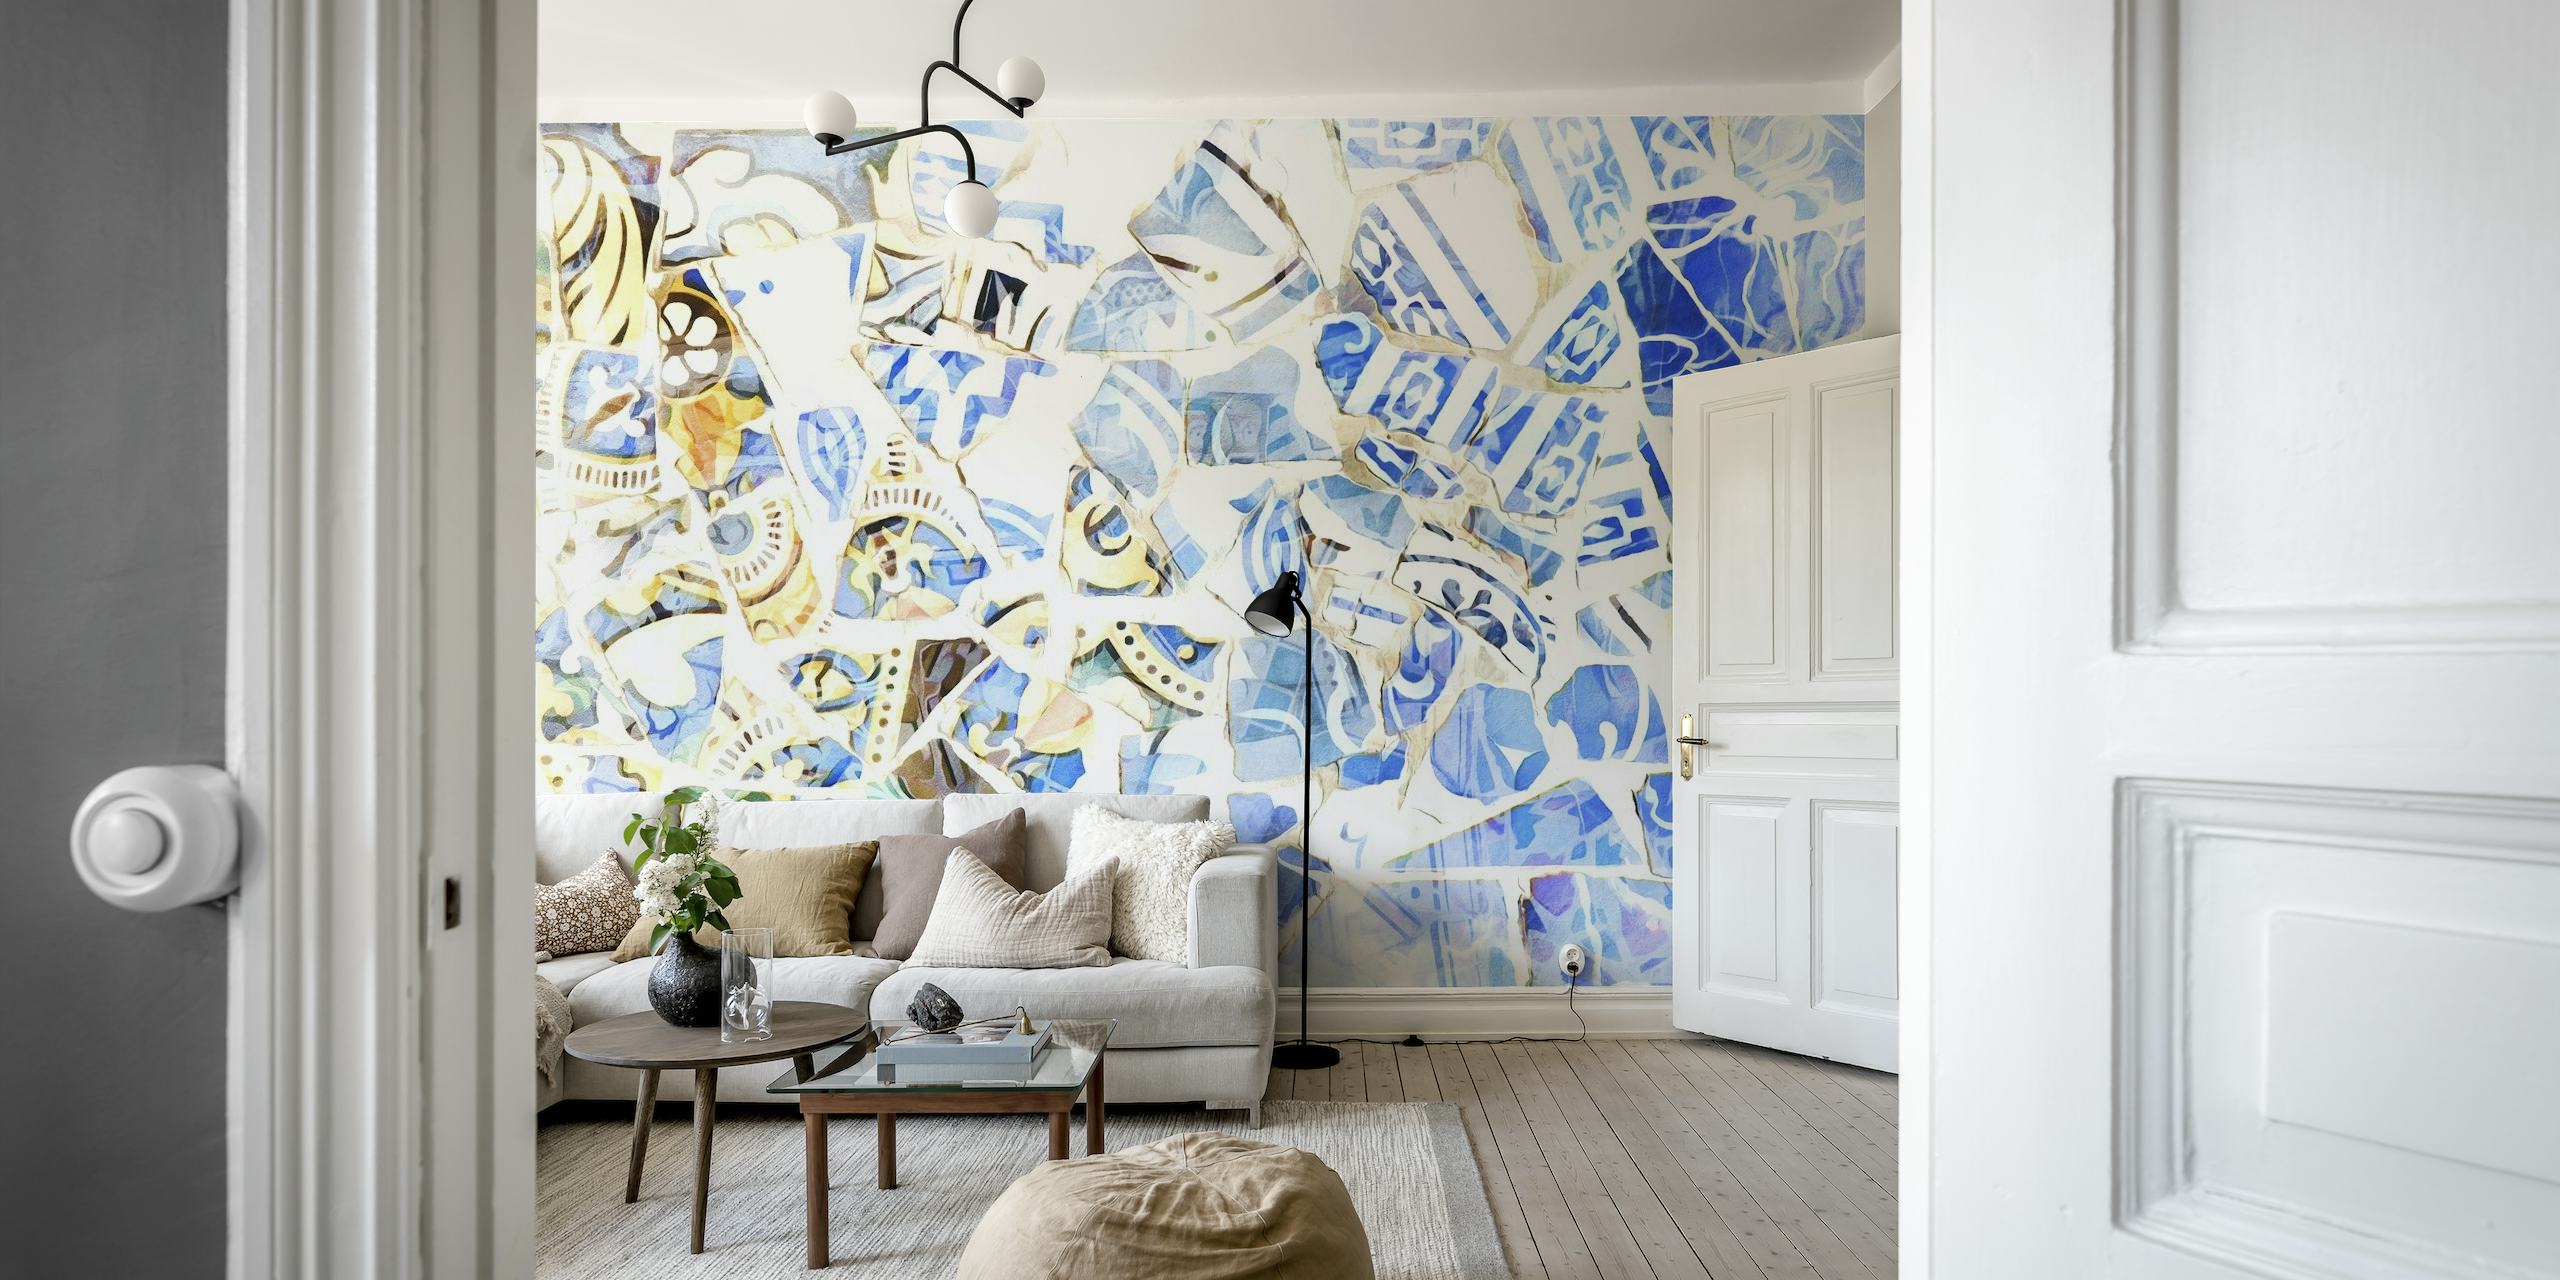 Peinture murale en mosaïque abstraite dans les tons de bleu et blanc, inspirée de l'art de Barcelone